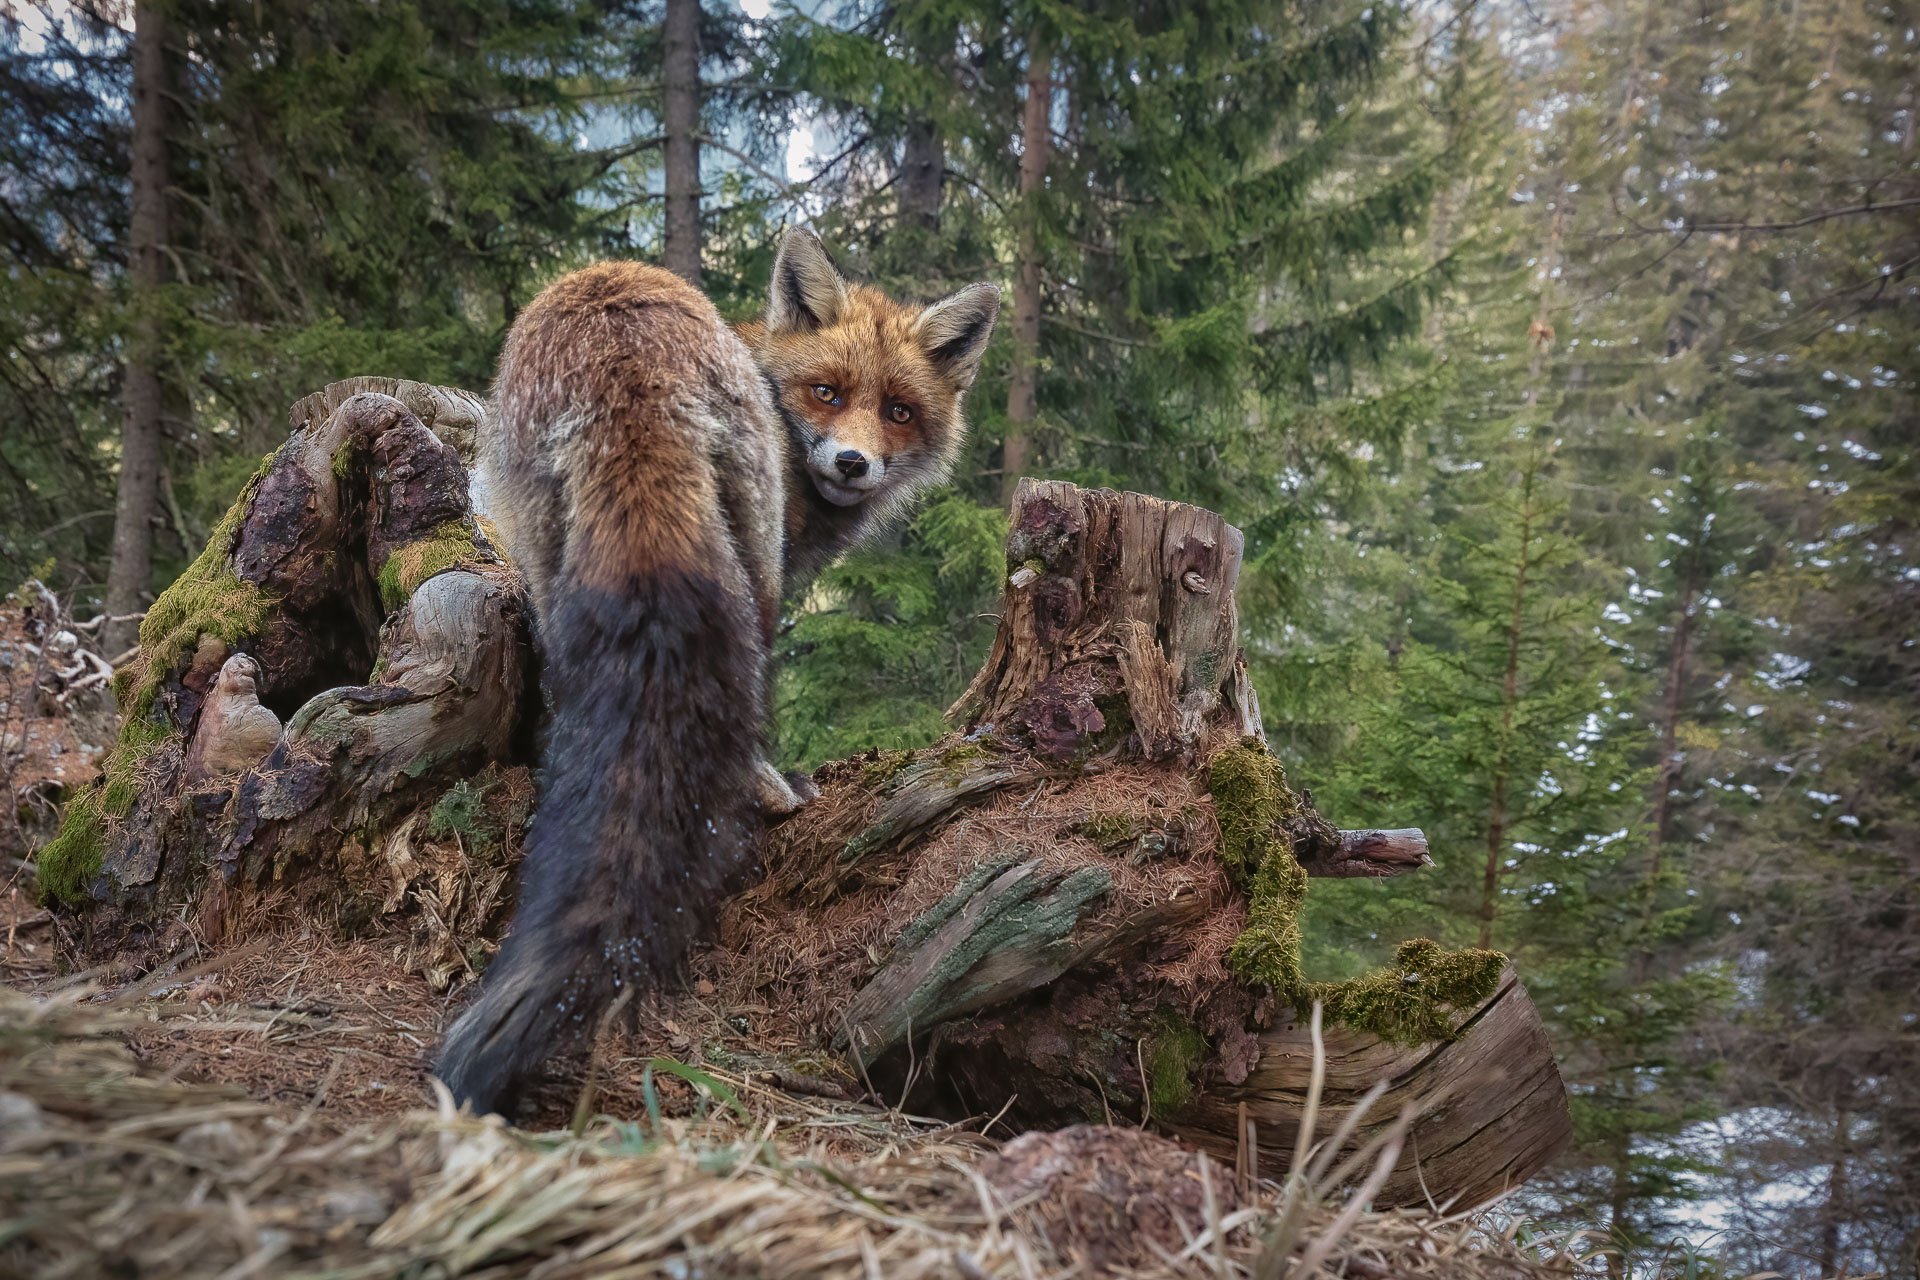 A fox in Graubünden, Switzerland.